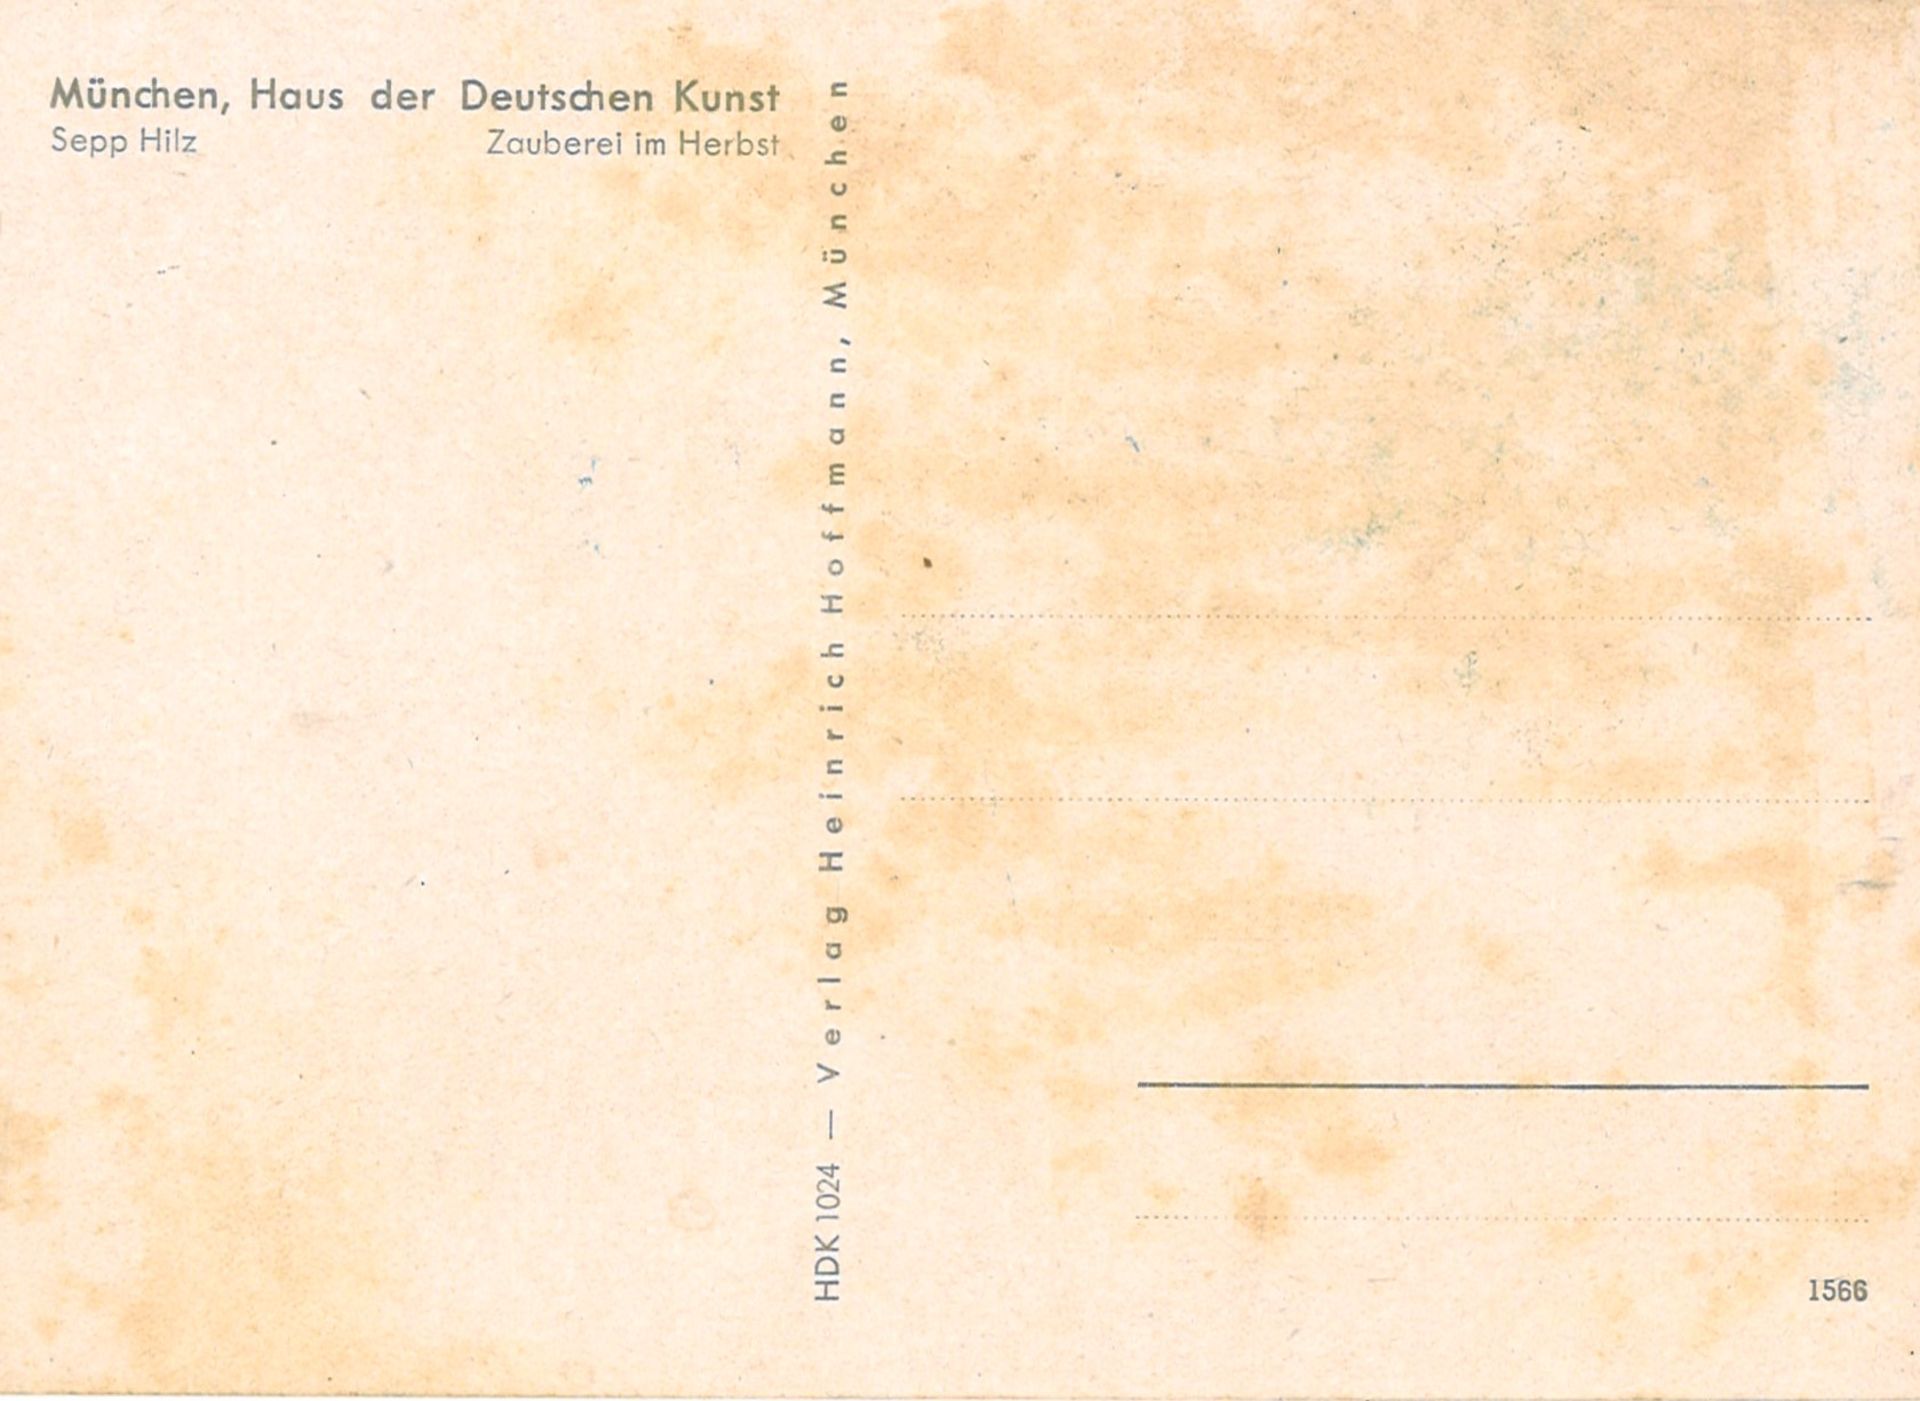 Postkarte "Zauberei im Herbst" von Sepp Hilz. München, Haus der Deutschen Kunst - Image 2 of 2